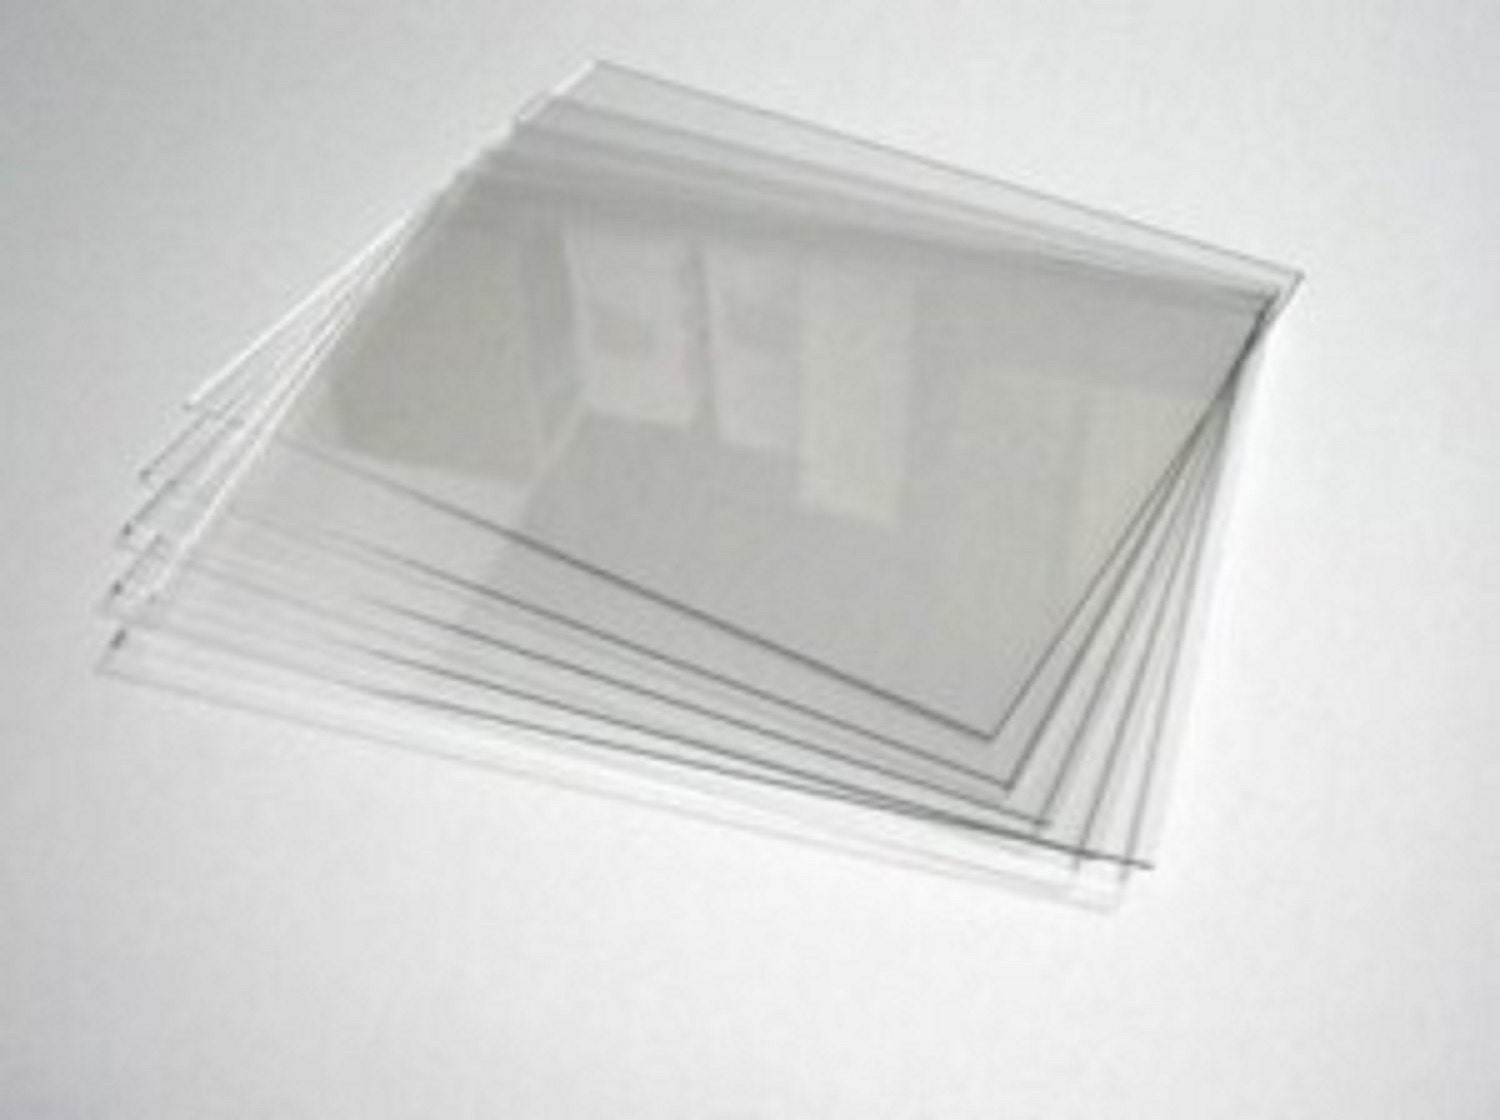 Disque rond en plastique acrylique transparent en plexiglas de 1/2  d'épaisseur Choisissez votre taille SIBE-R Plastic Supply -  France